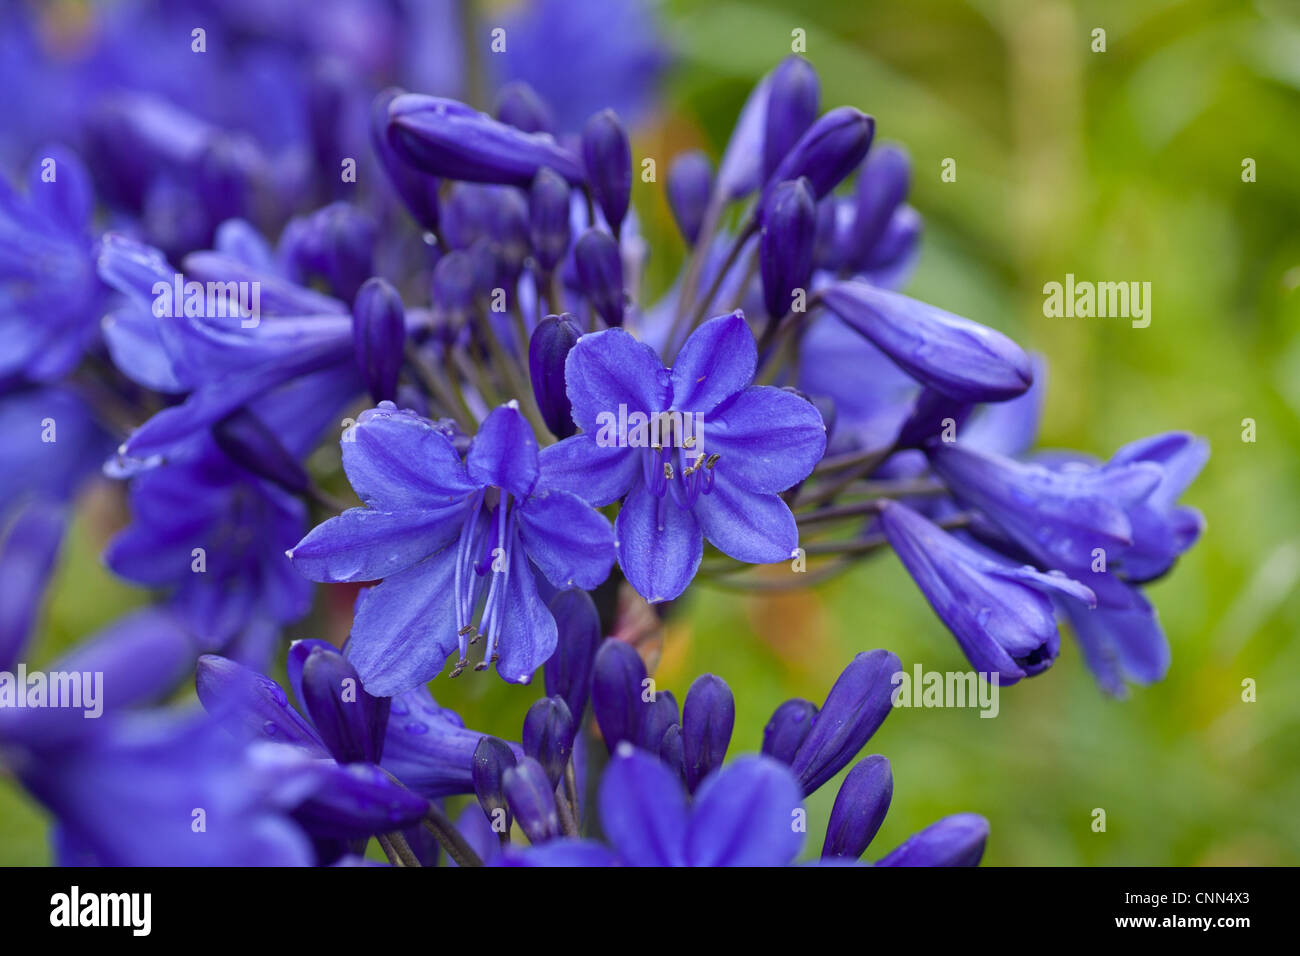 Blue allium (allium caeruleum azureum) common name 'Azure flowered garlic' or 'blue flowered garlic'. Stock Photo